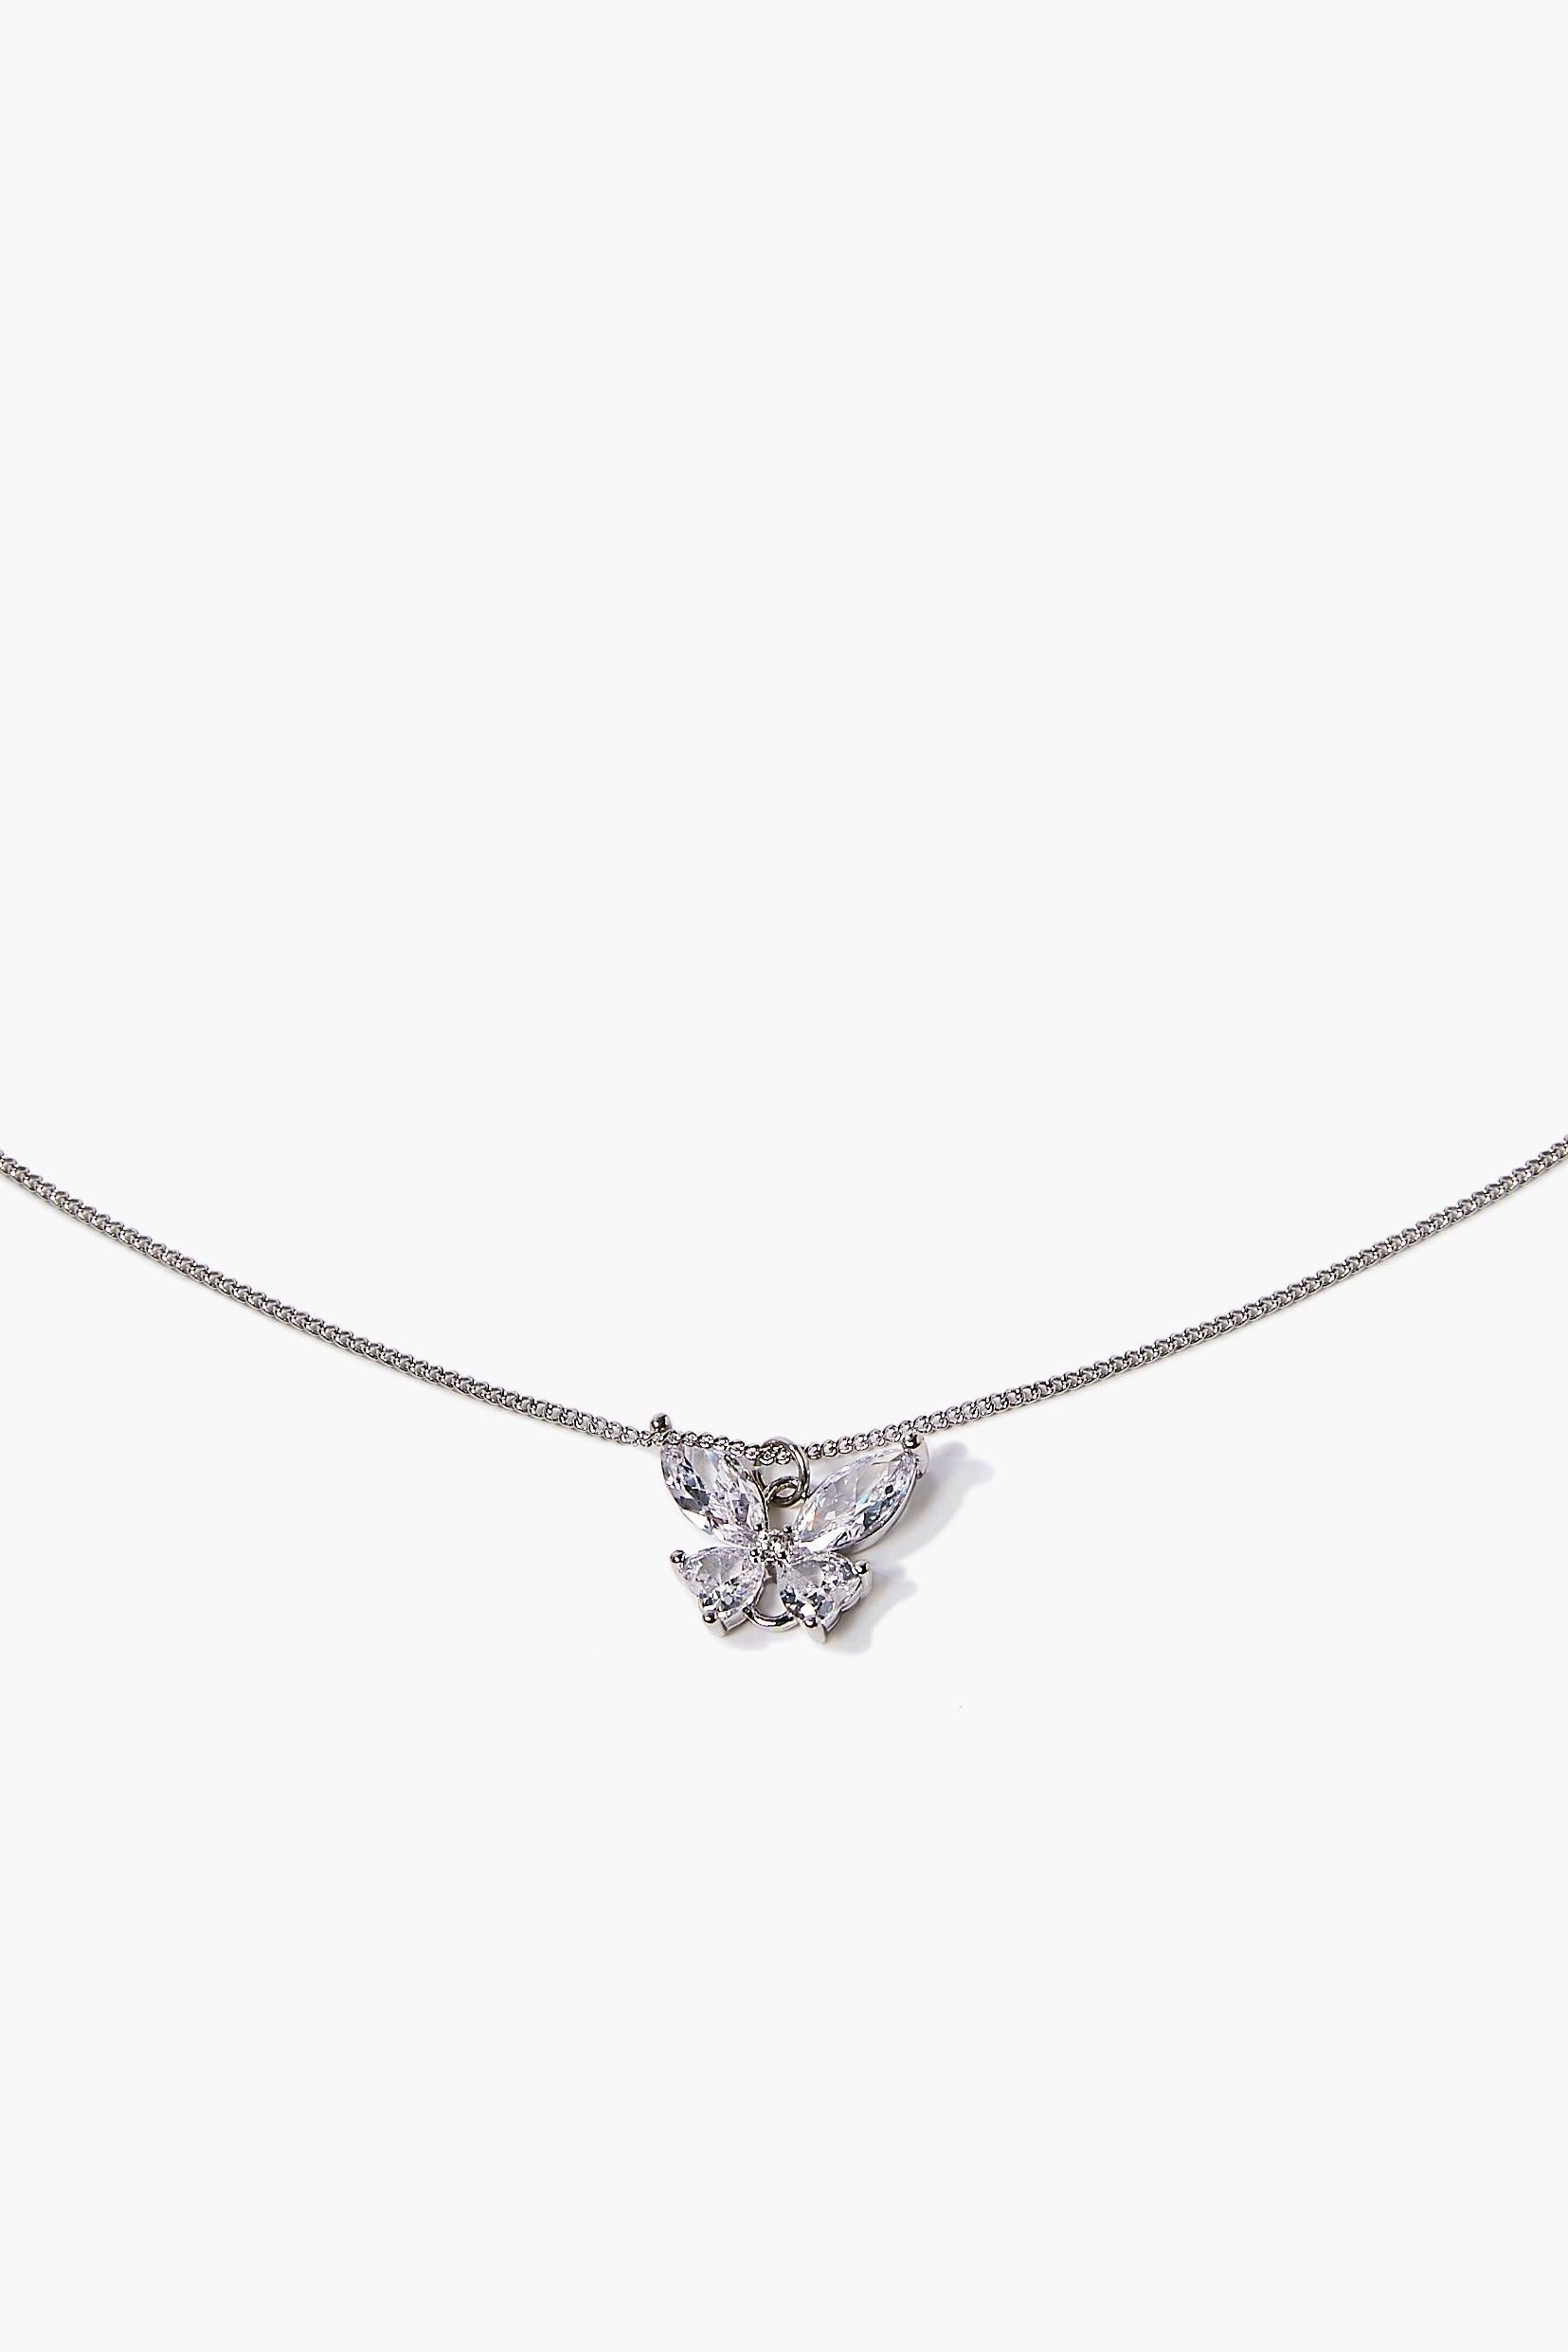 Silverclear Rhinestone Butterfly Necklace 2